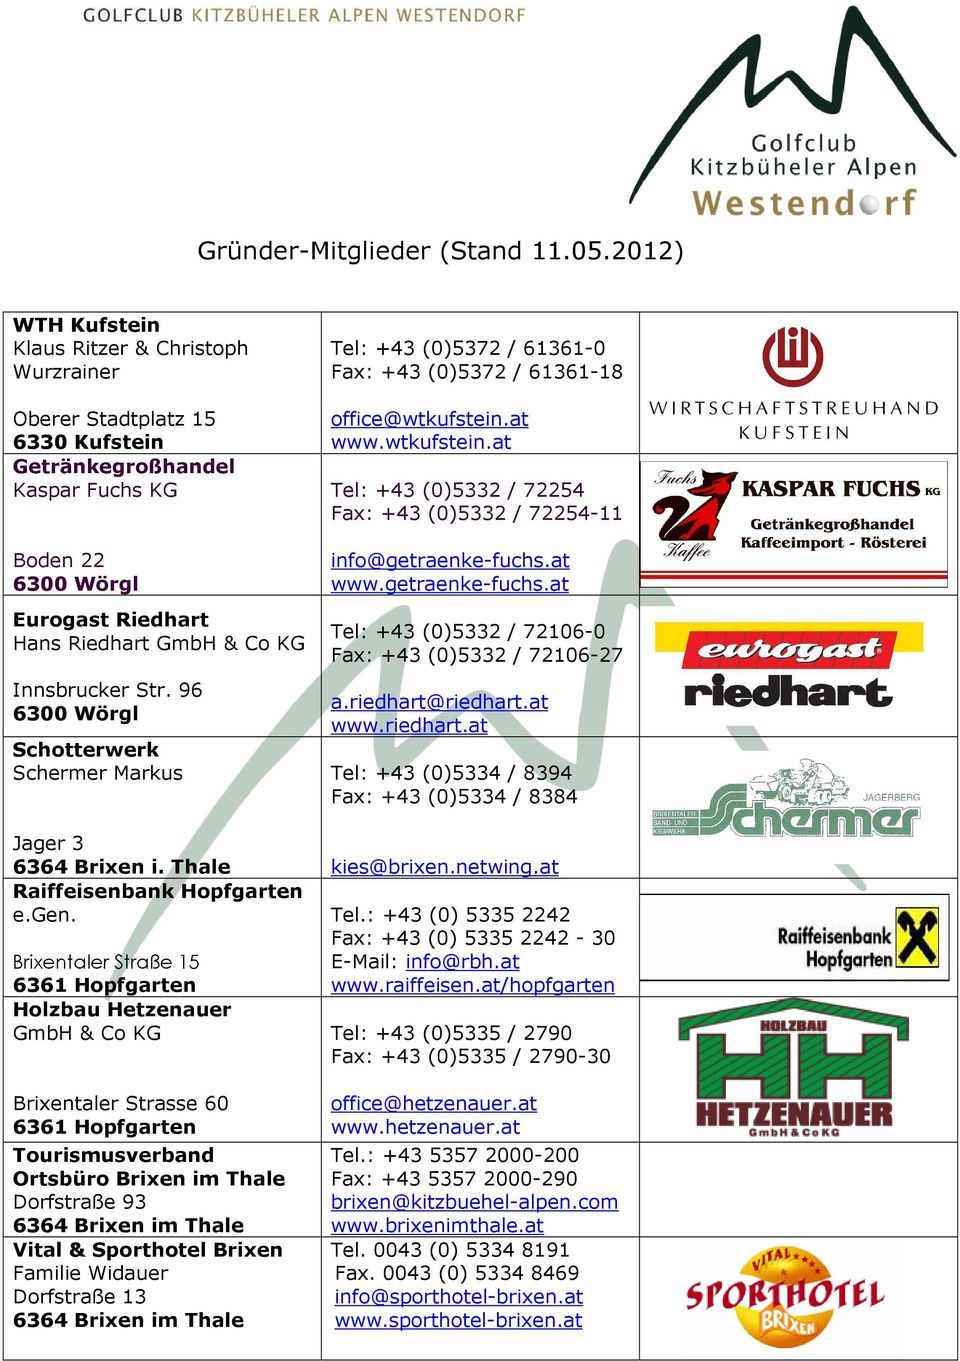 96 Schotterwerk Schermer Markus Jager 3 6364 Brixen i. Thale Raiffeisenbank Hopfgarten e.gen.